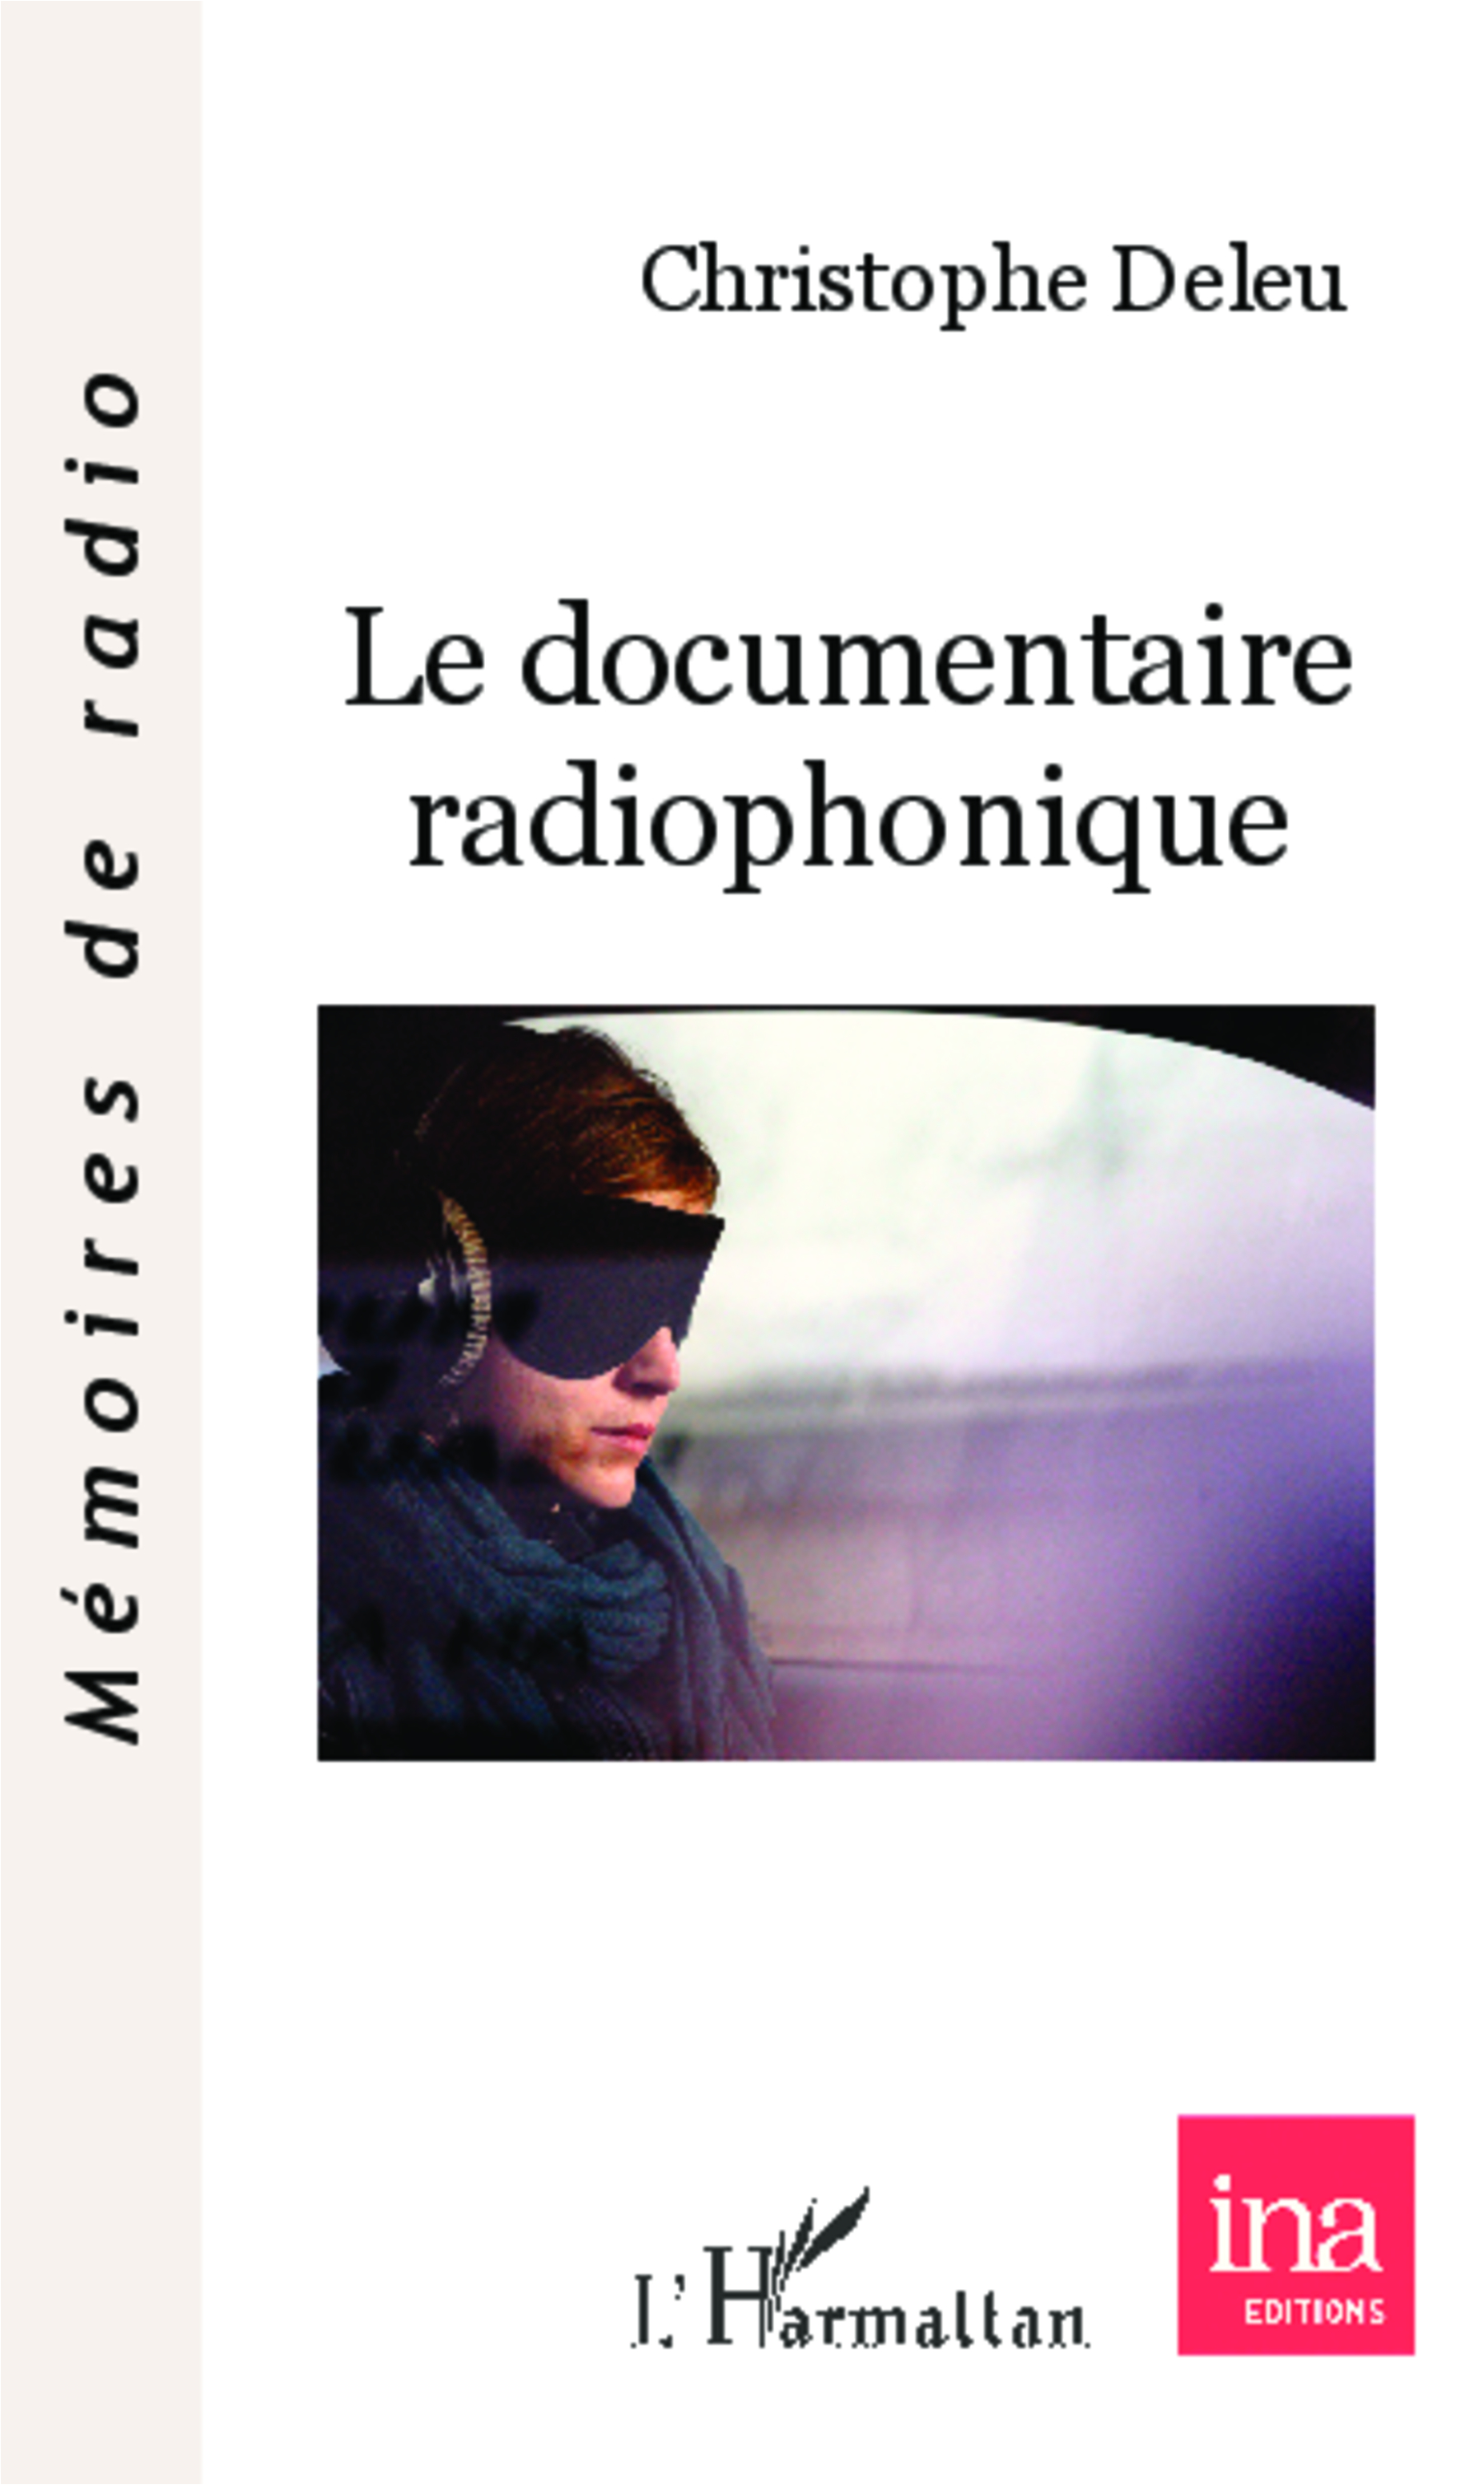 Un livre sur le documentaire radiophonique